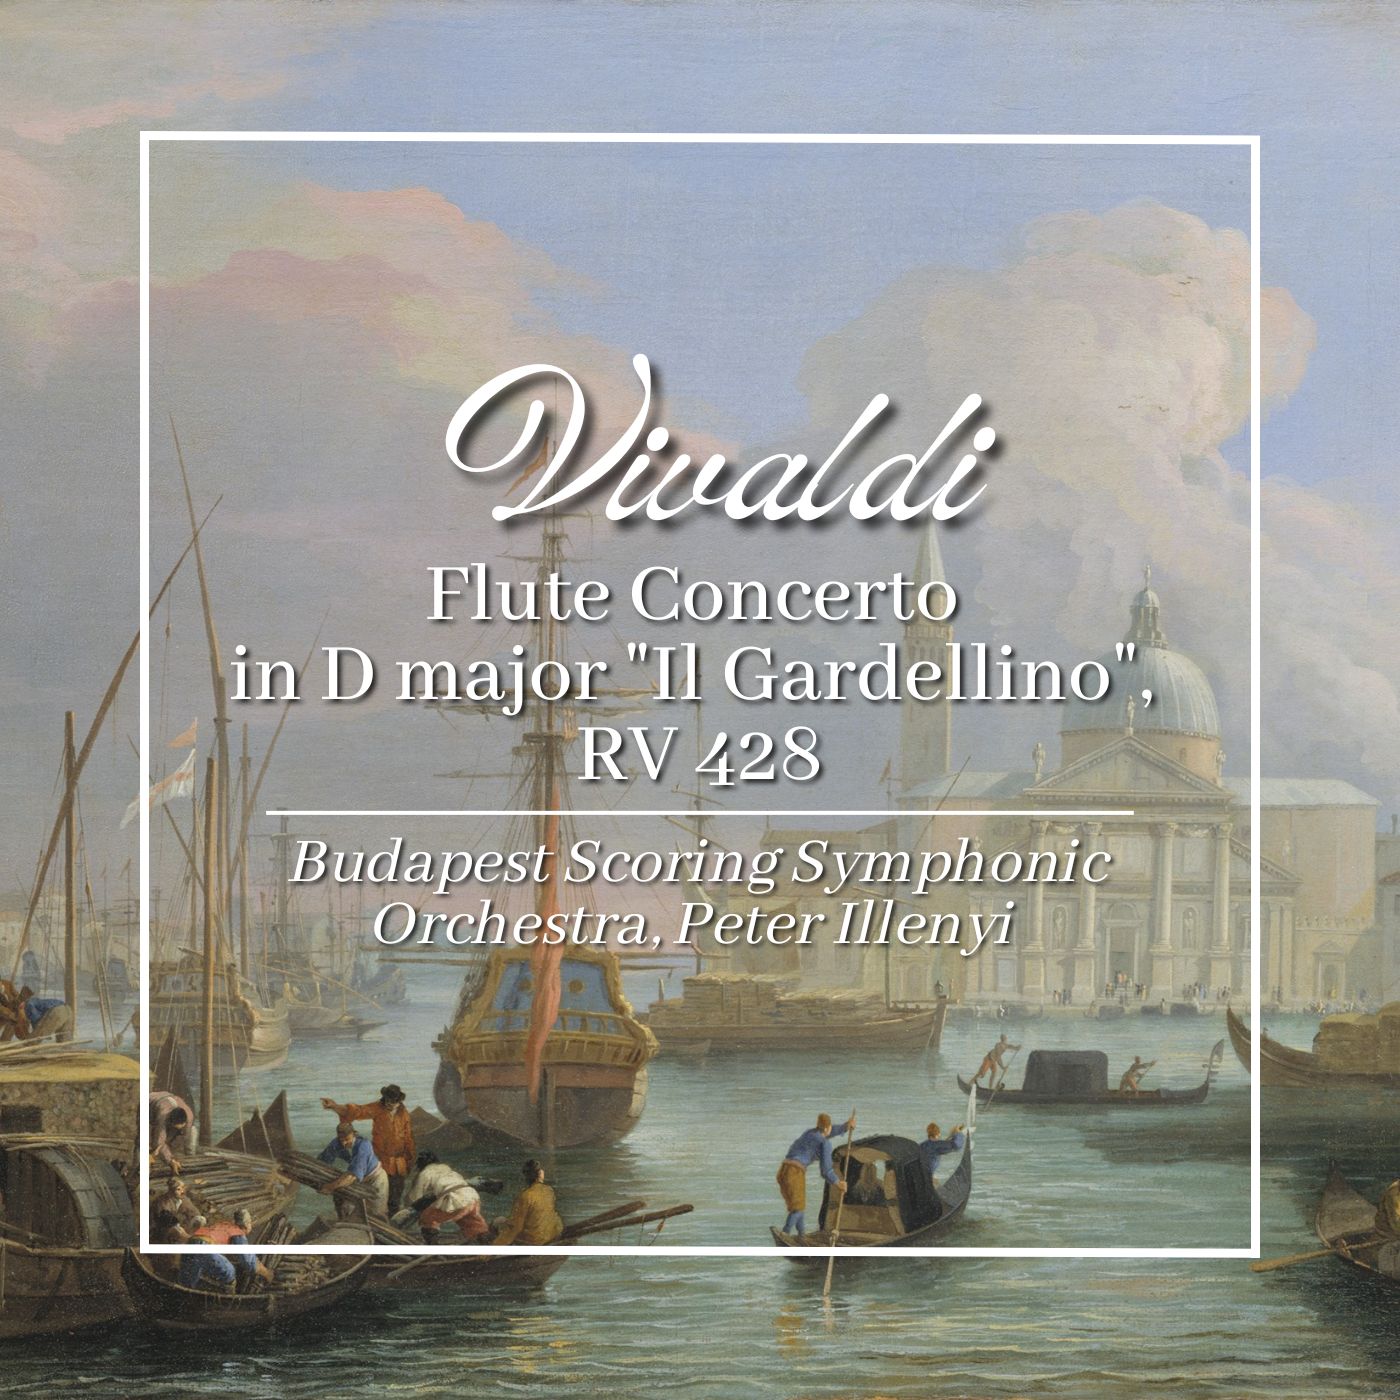 Vivaldi: Flute Concerto in D major 